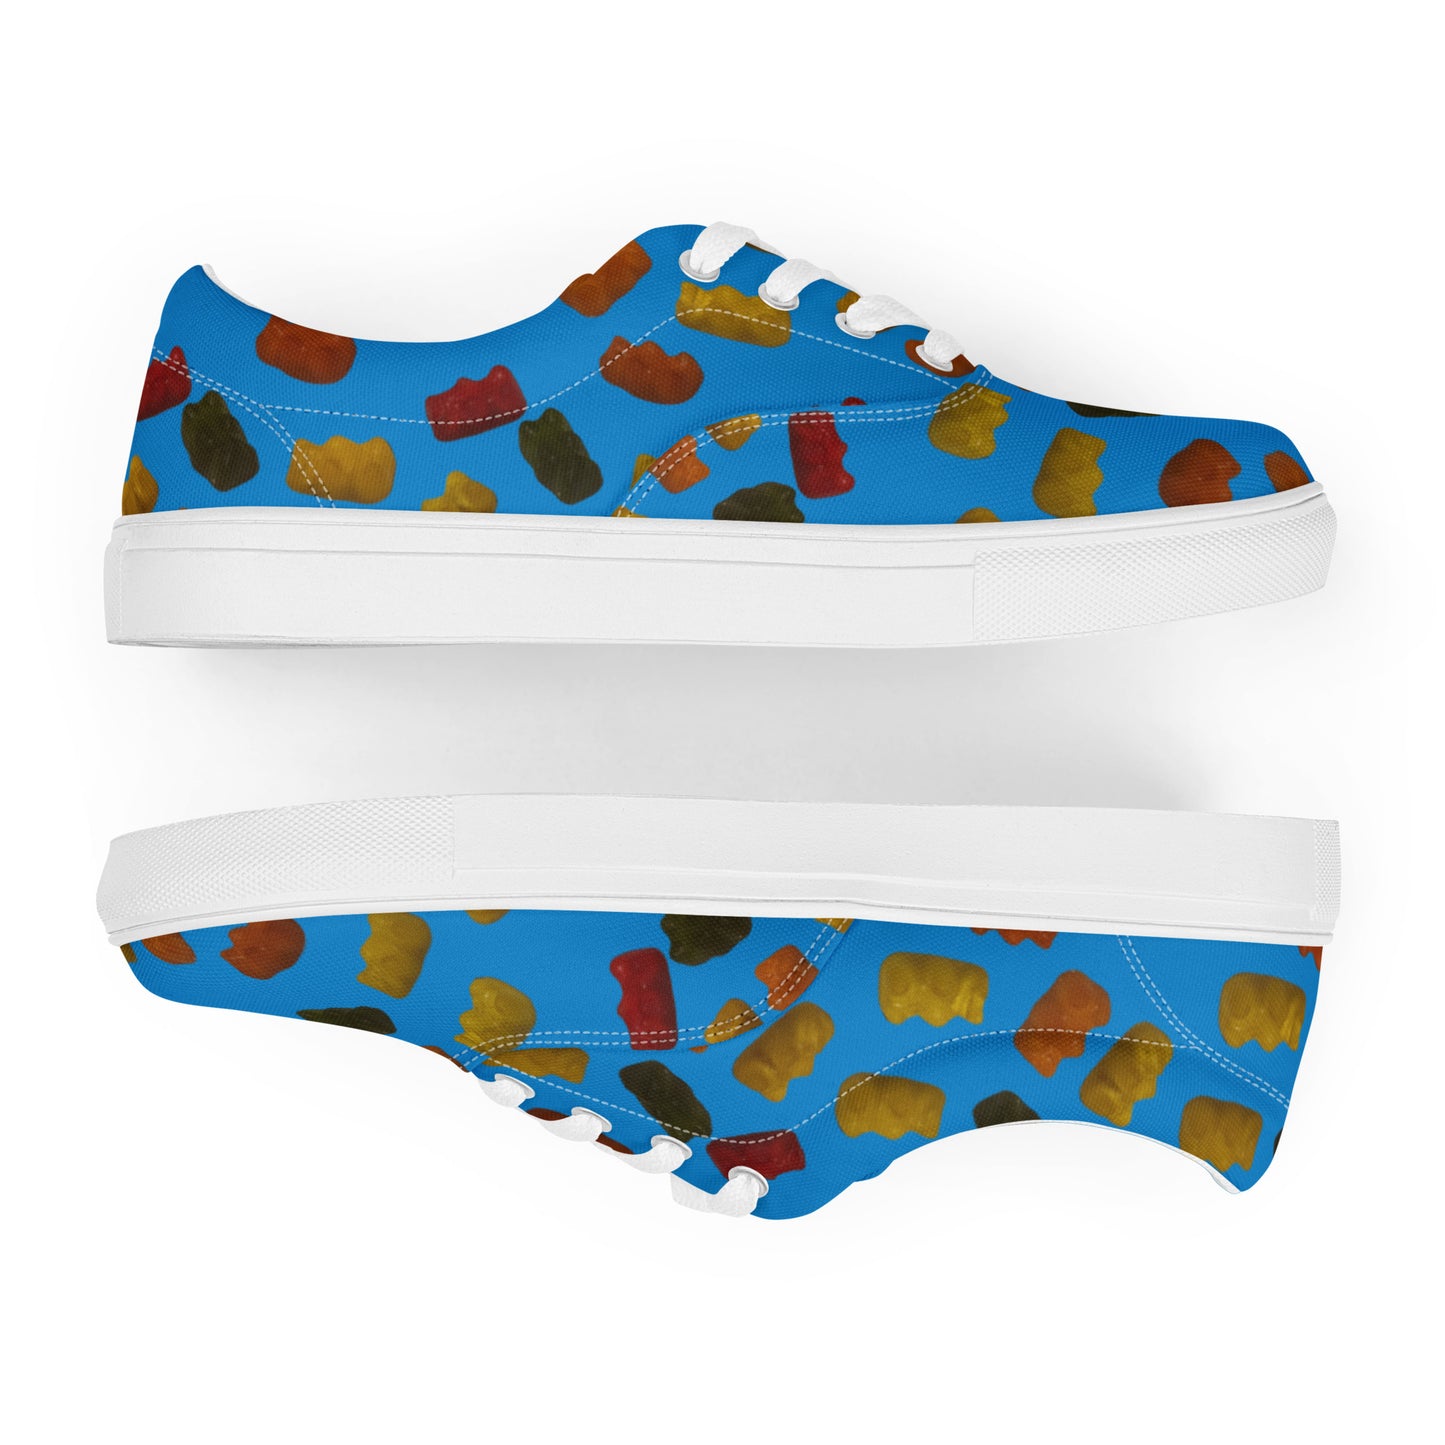 Gummy Bears - Women’s lace-up canvas shoes - Blue